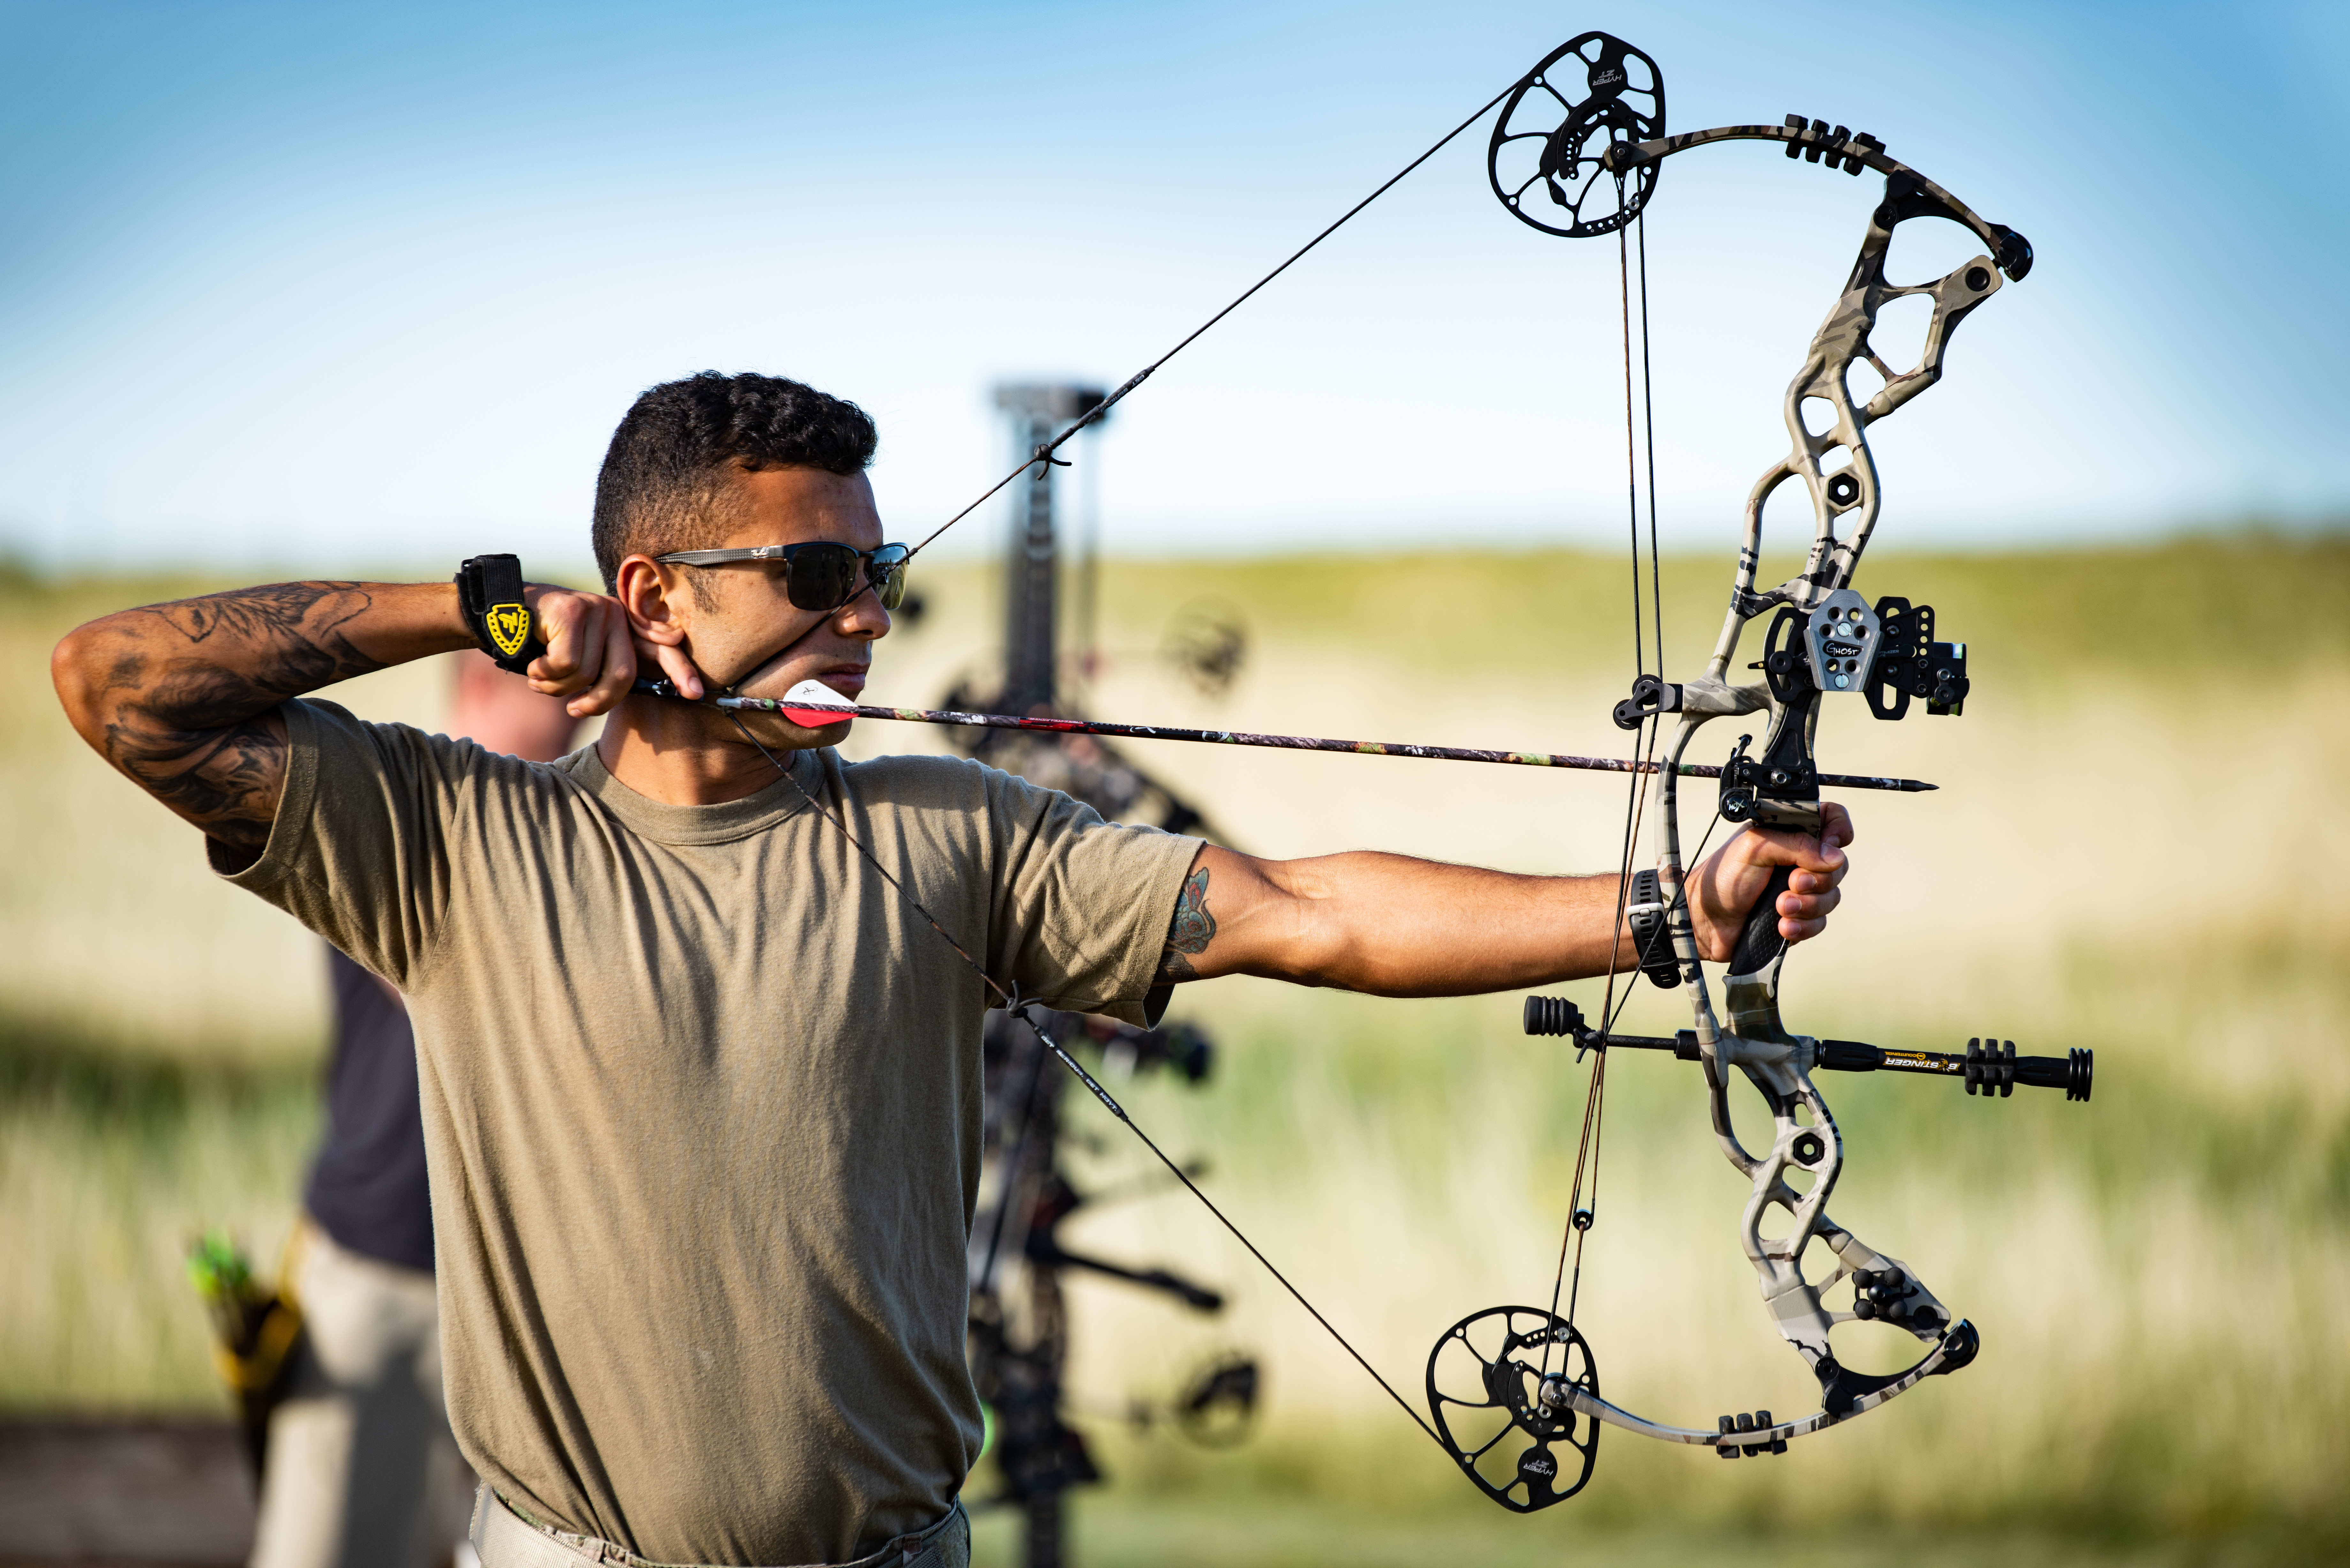 Youth Archery | Kiawah Island Golf Resort Amazon.com: Archery King Bow Mast...